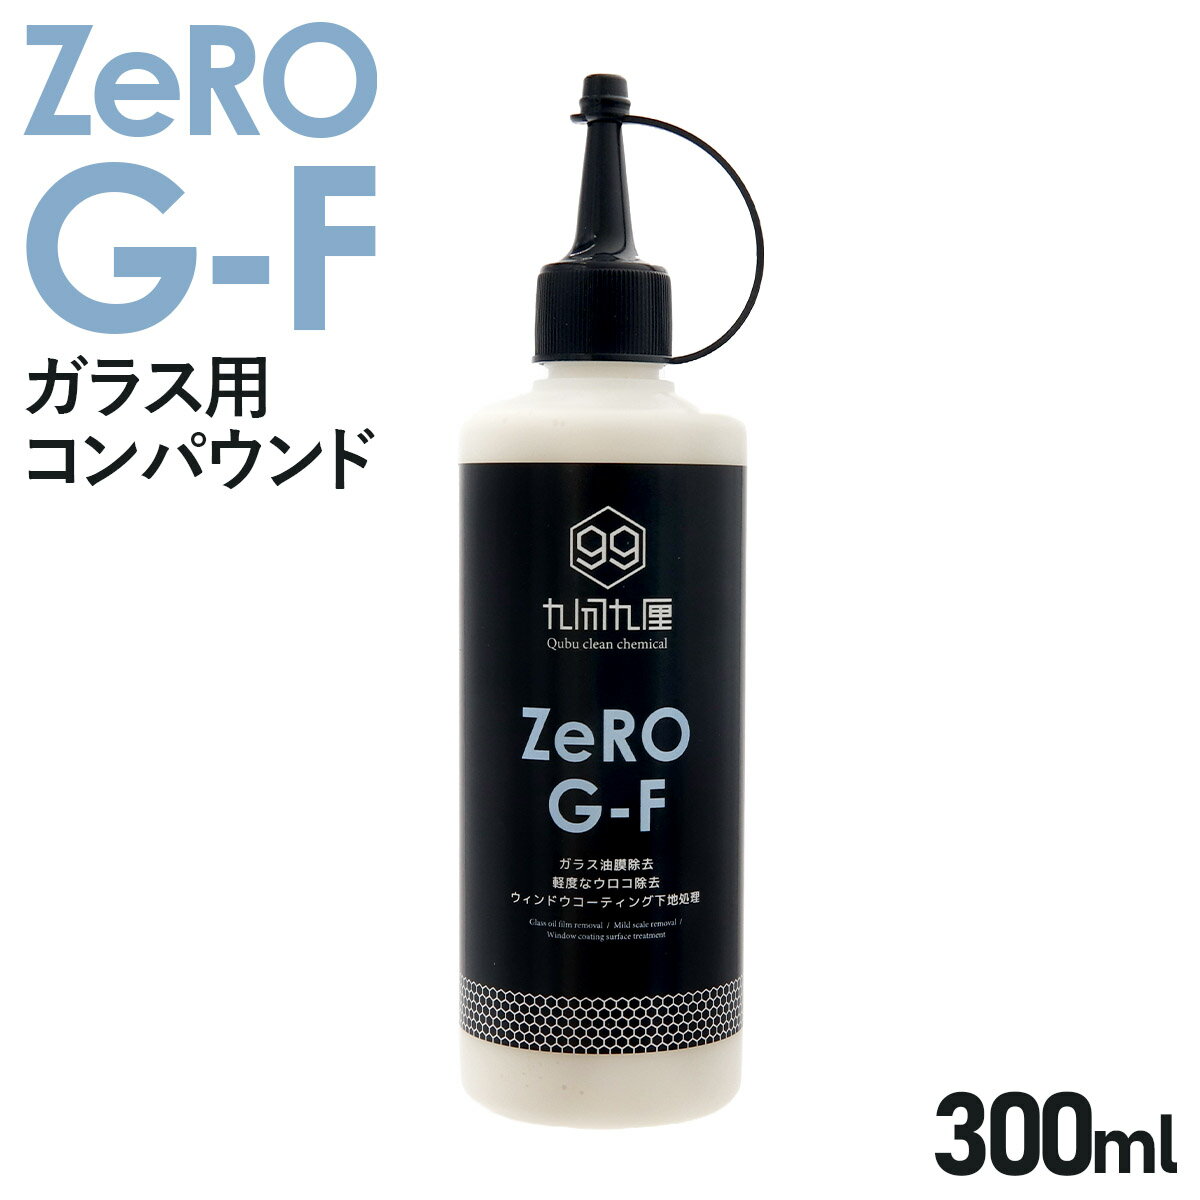 クブクリーンケミカル コンパウンド QCC Zero G-F ガラス油膜・軽度ウロコ除去コンパウンド 300ml 水跡 水垢 ウロコ 除去 カーメンテナンス 研磨剤